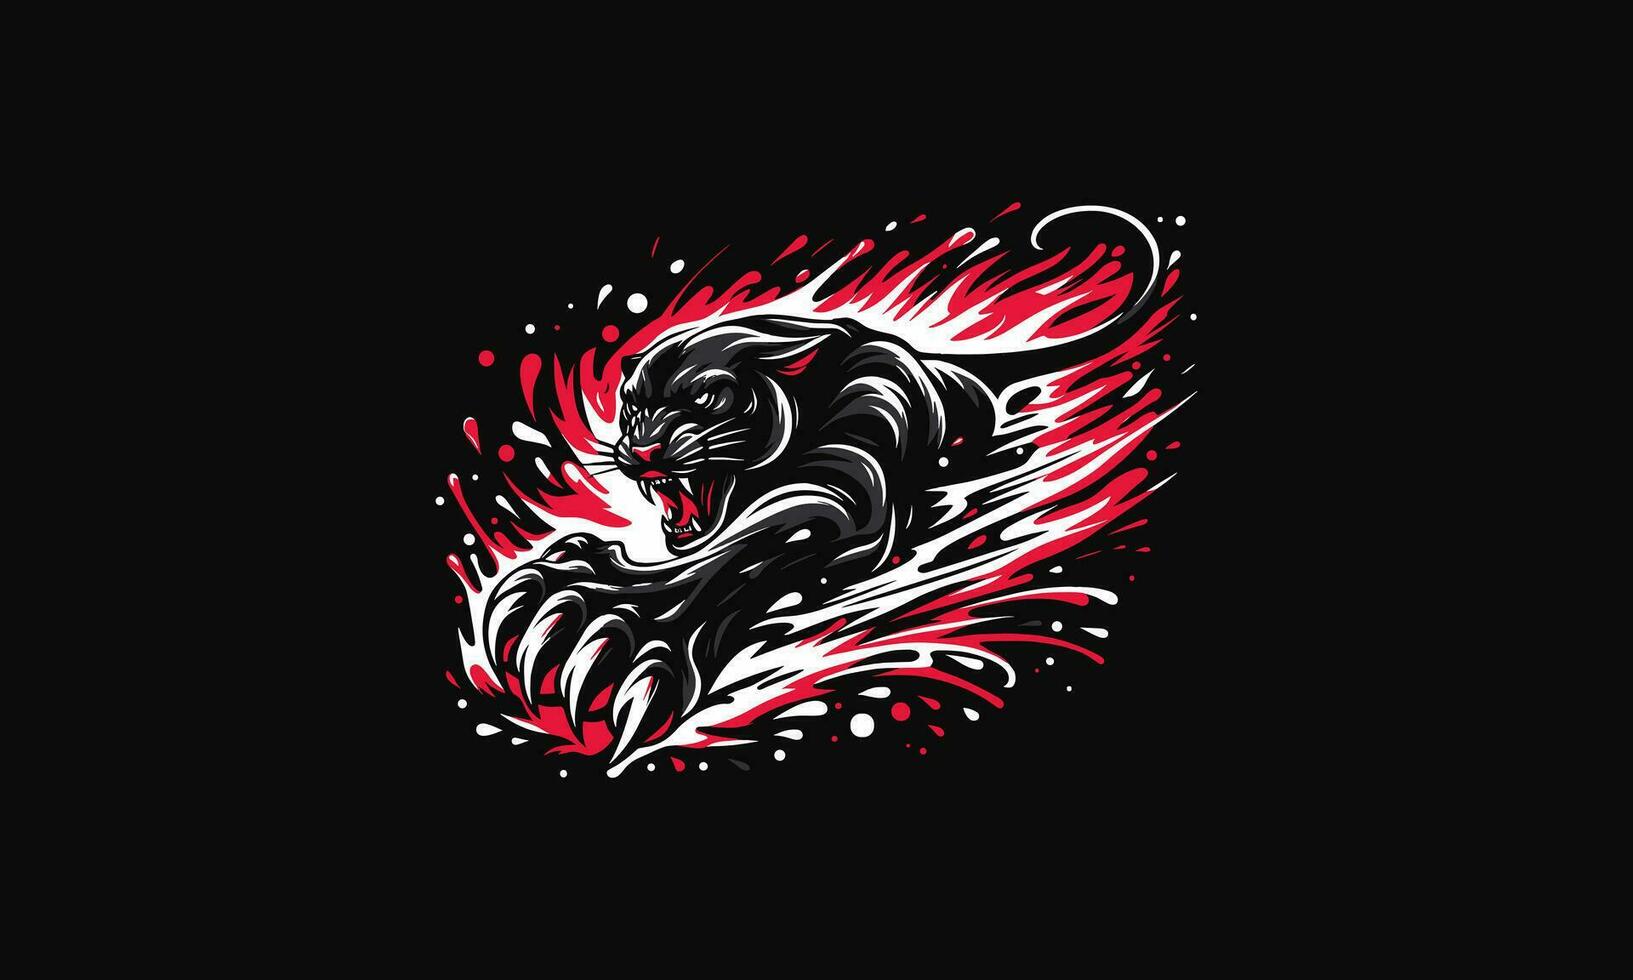 panther angry splash vector illustration artwork design